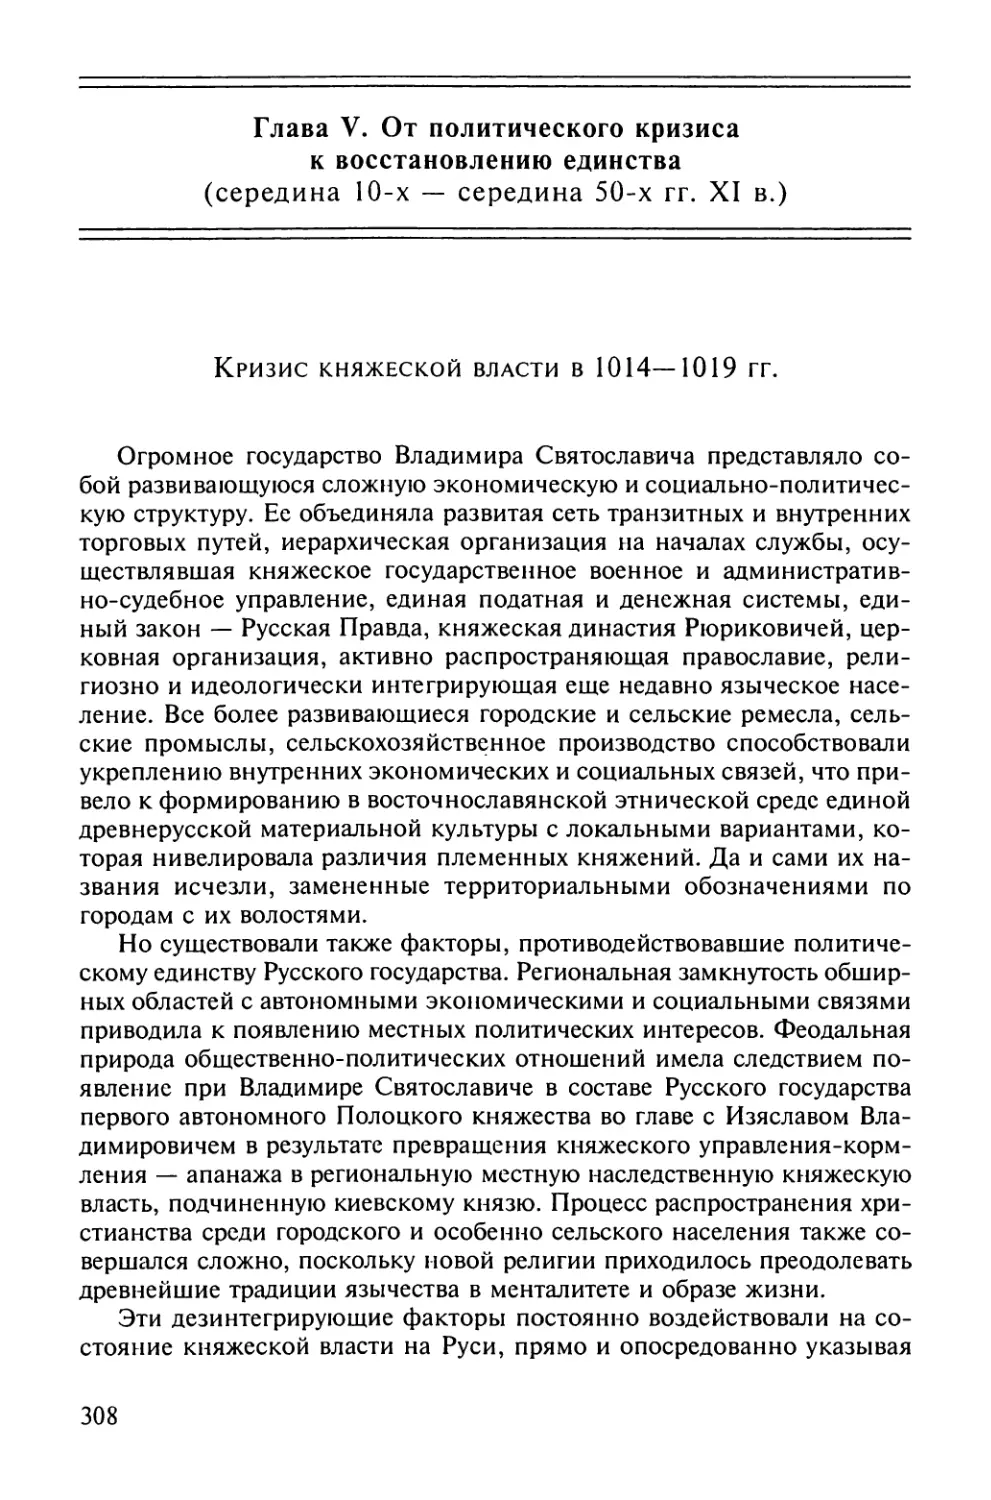 Кризис княжеской власти в 1014 – 1019 гг.